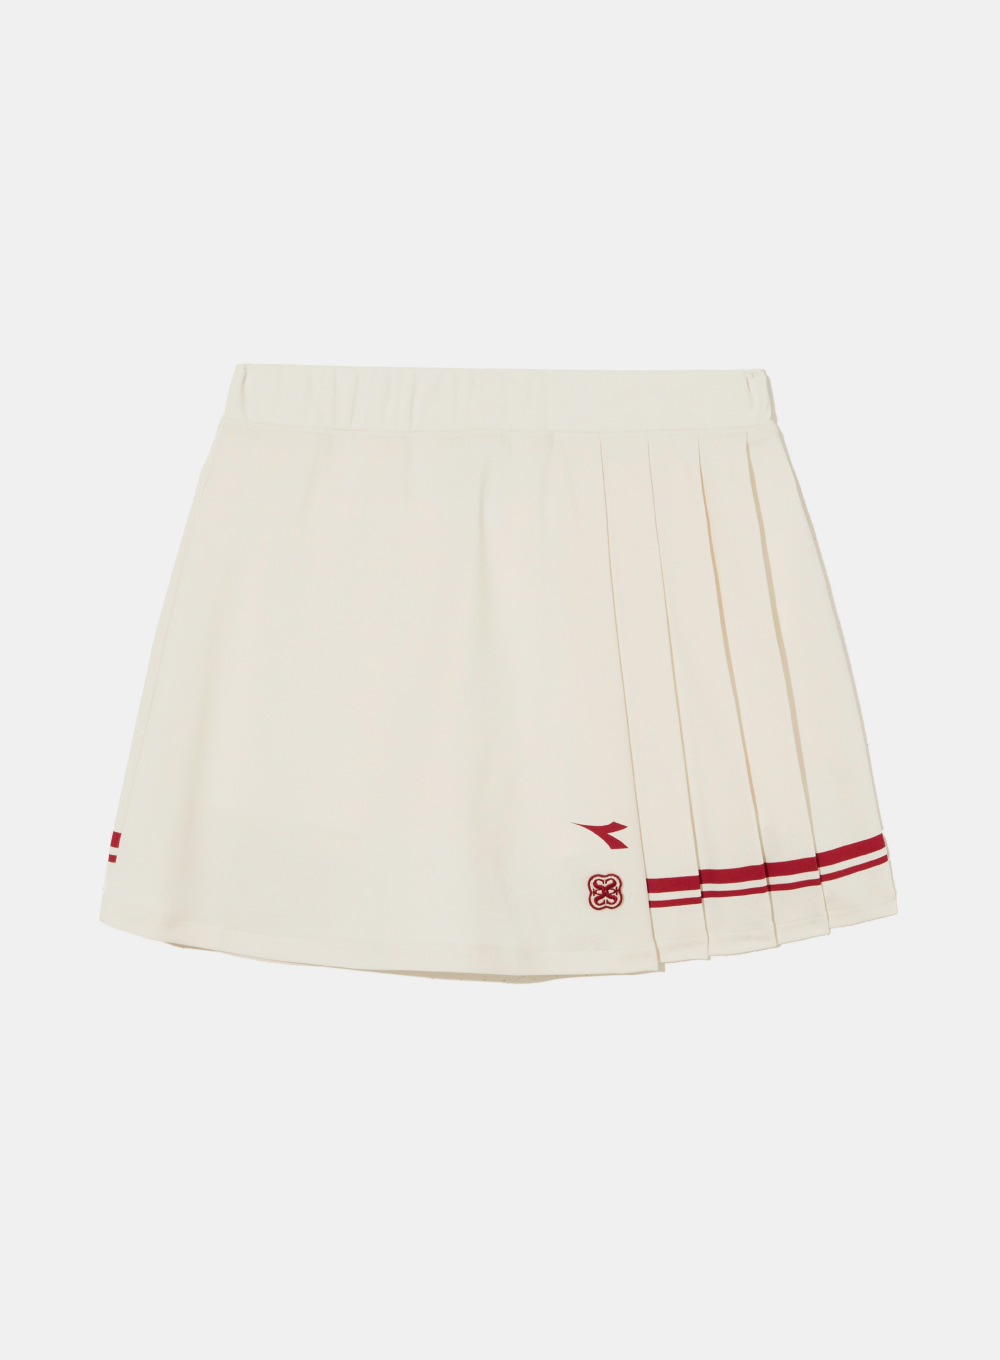 [2월 5일 예약배송][Satur X Diadora] Woman Pleated Tennis Skirt - Ivory Red